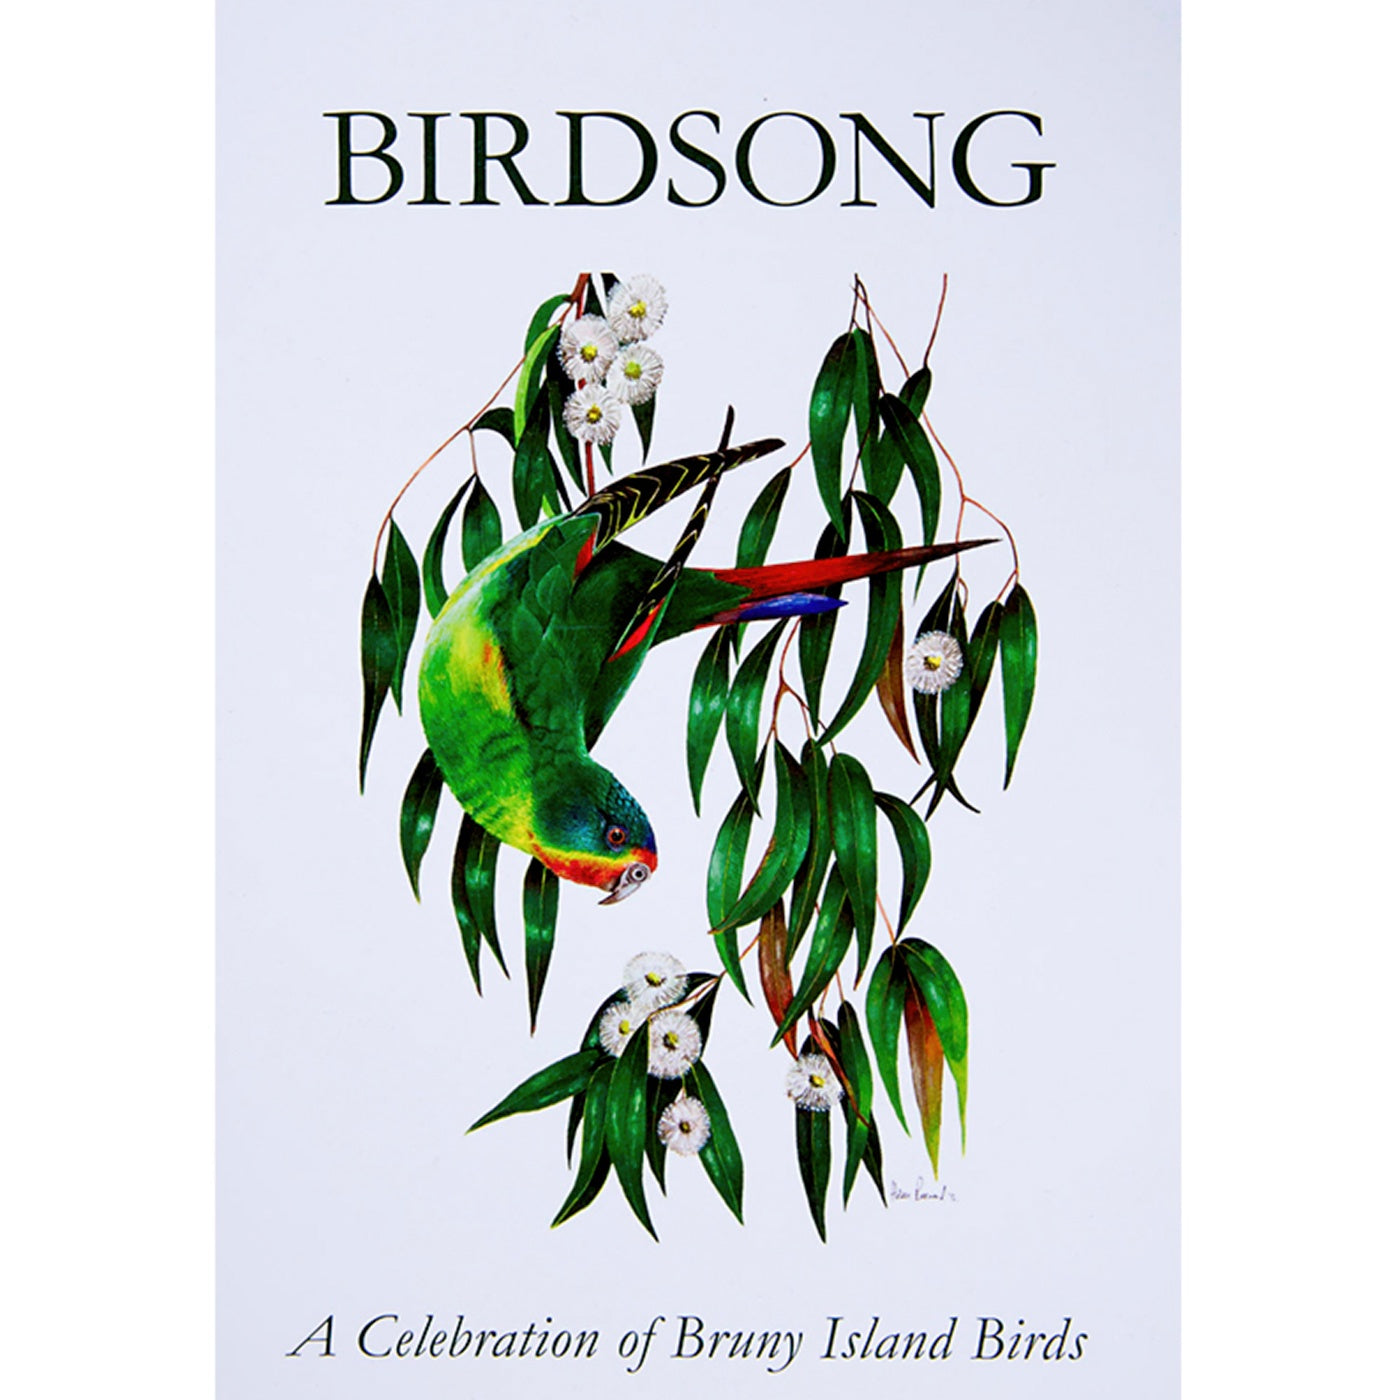 Birdsong: A Celebration of Bruny Island Birds